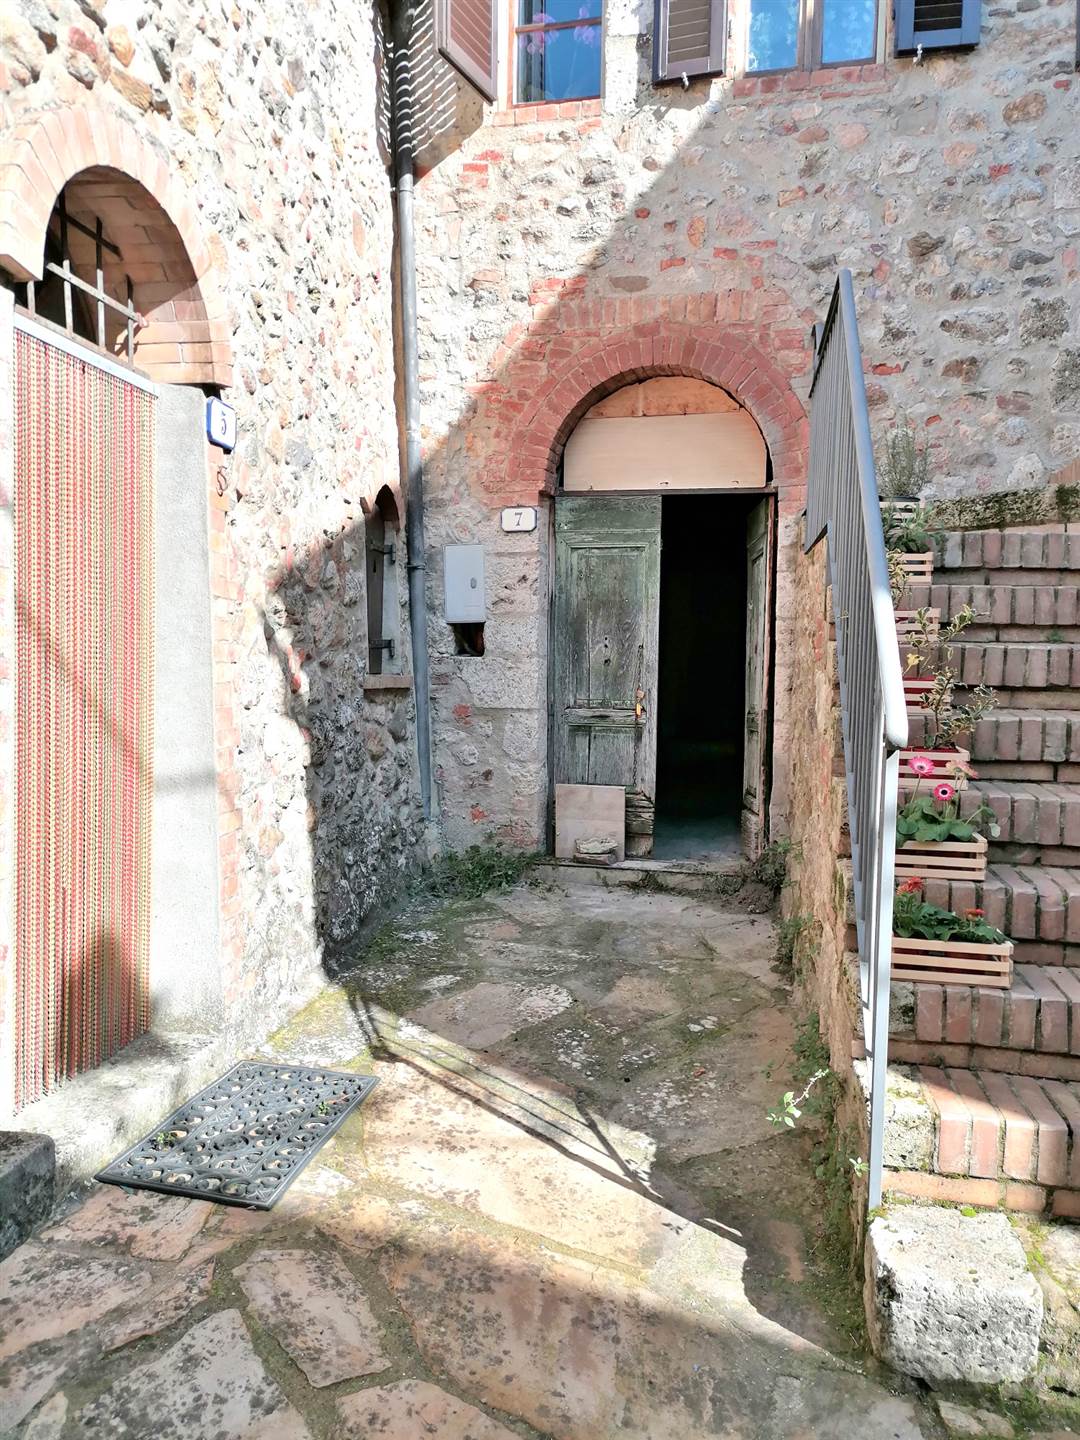 All'interno del caratteristico borgo Medioevale di San Lorenzo a Merse, appartamento posto al piano terreno con ingresso singolo e sviluppato su un unico livello. Si compone da ampio soggiorno con 